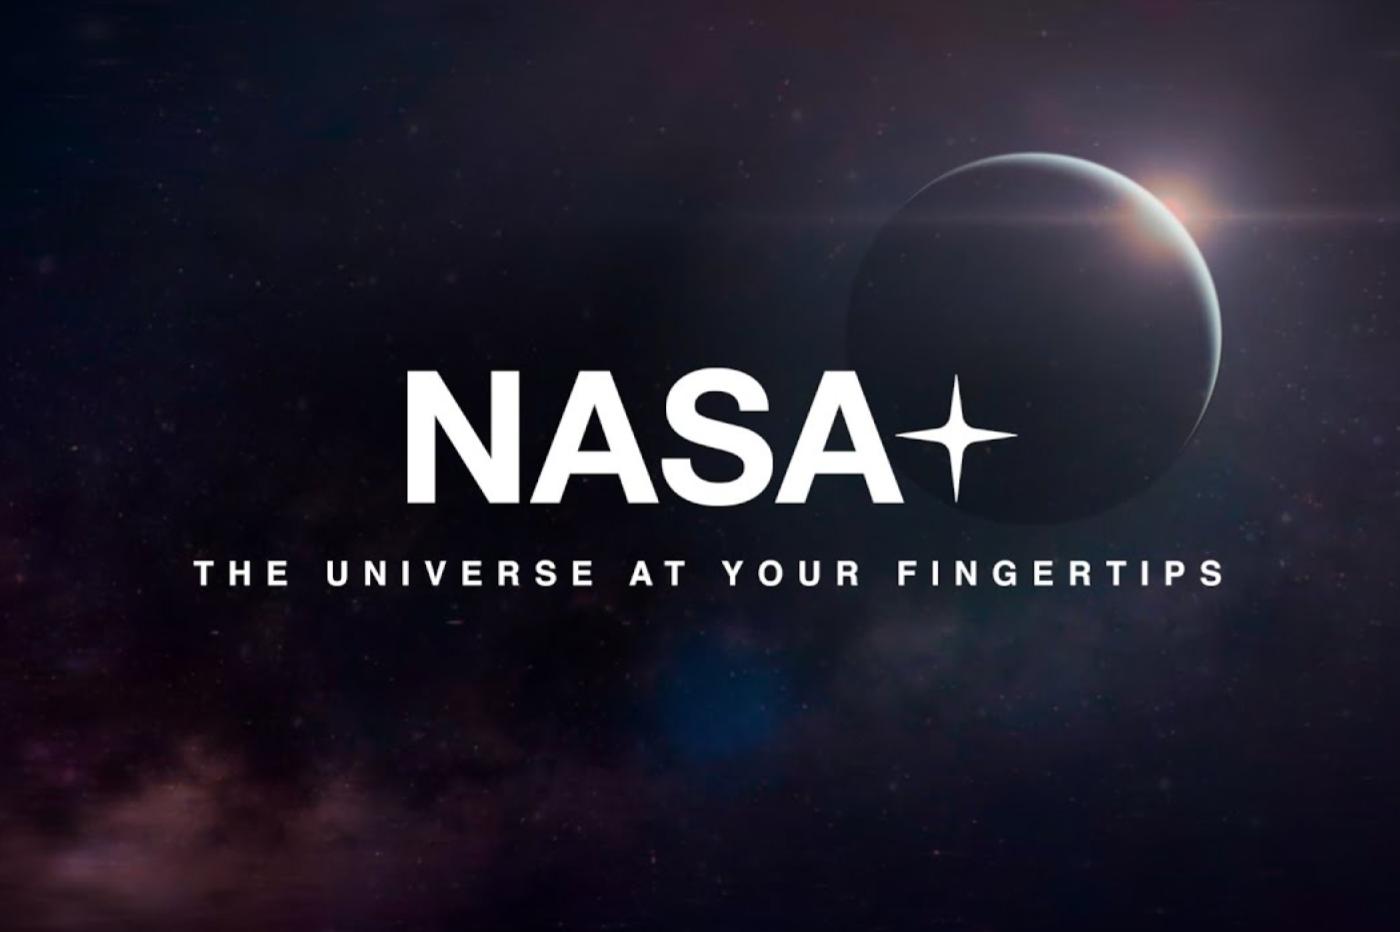 Le teaser de NASA+, le nouveau service de streaming de l'agence spatiale américaine